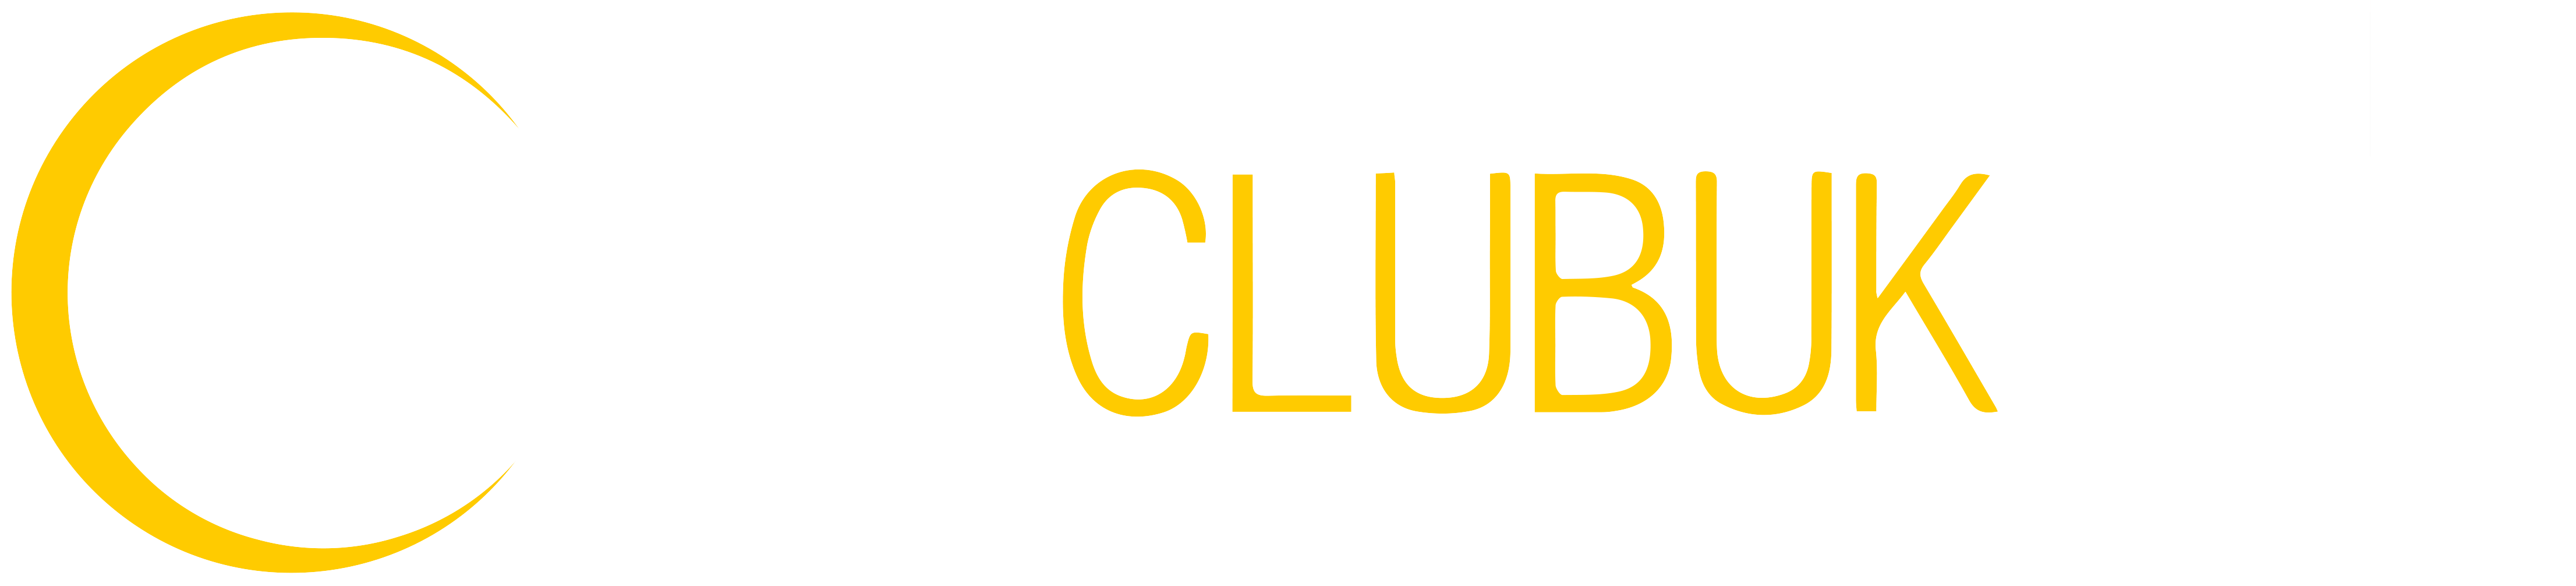 Cruise Club UK